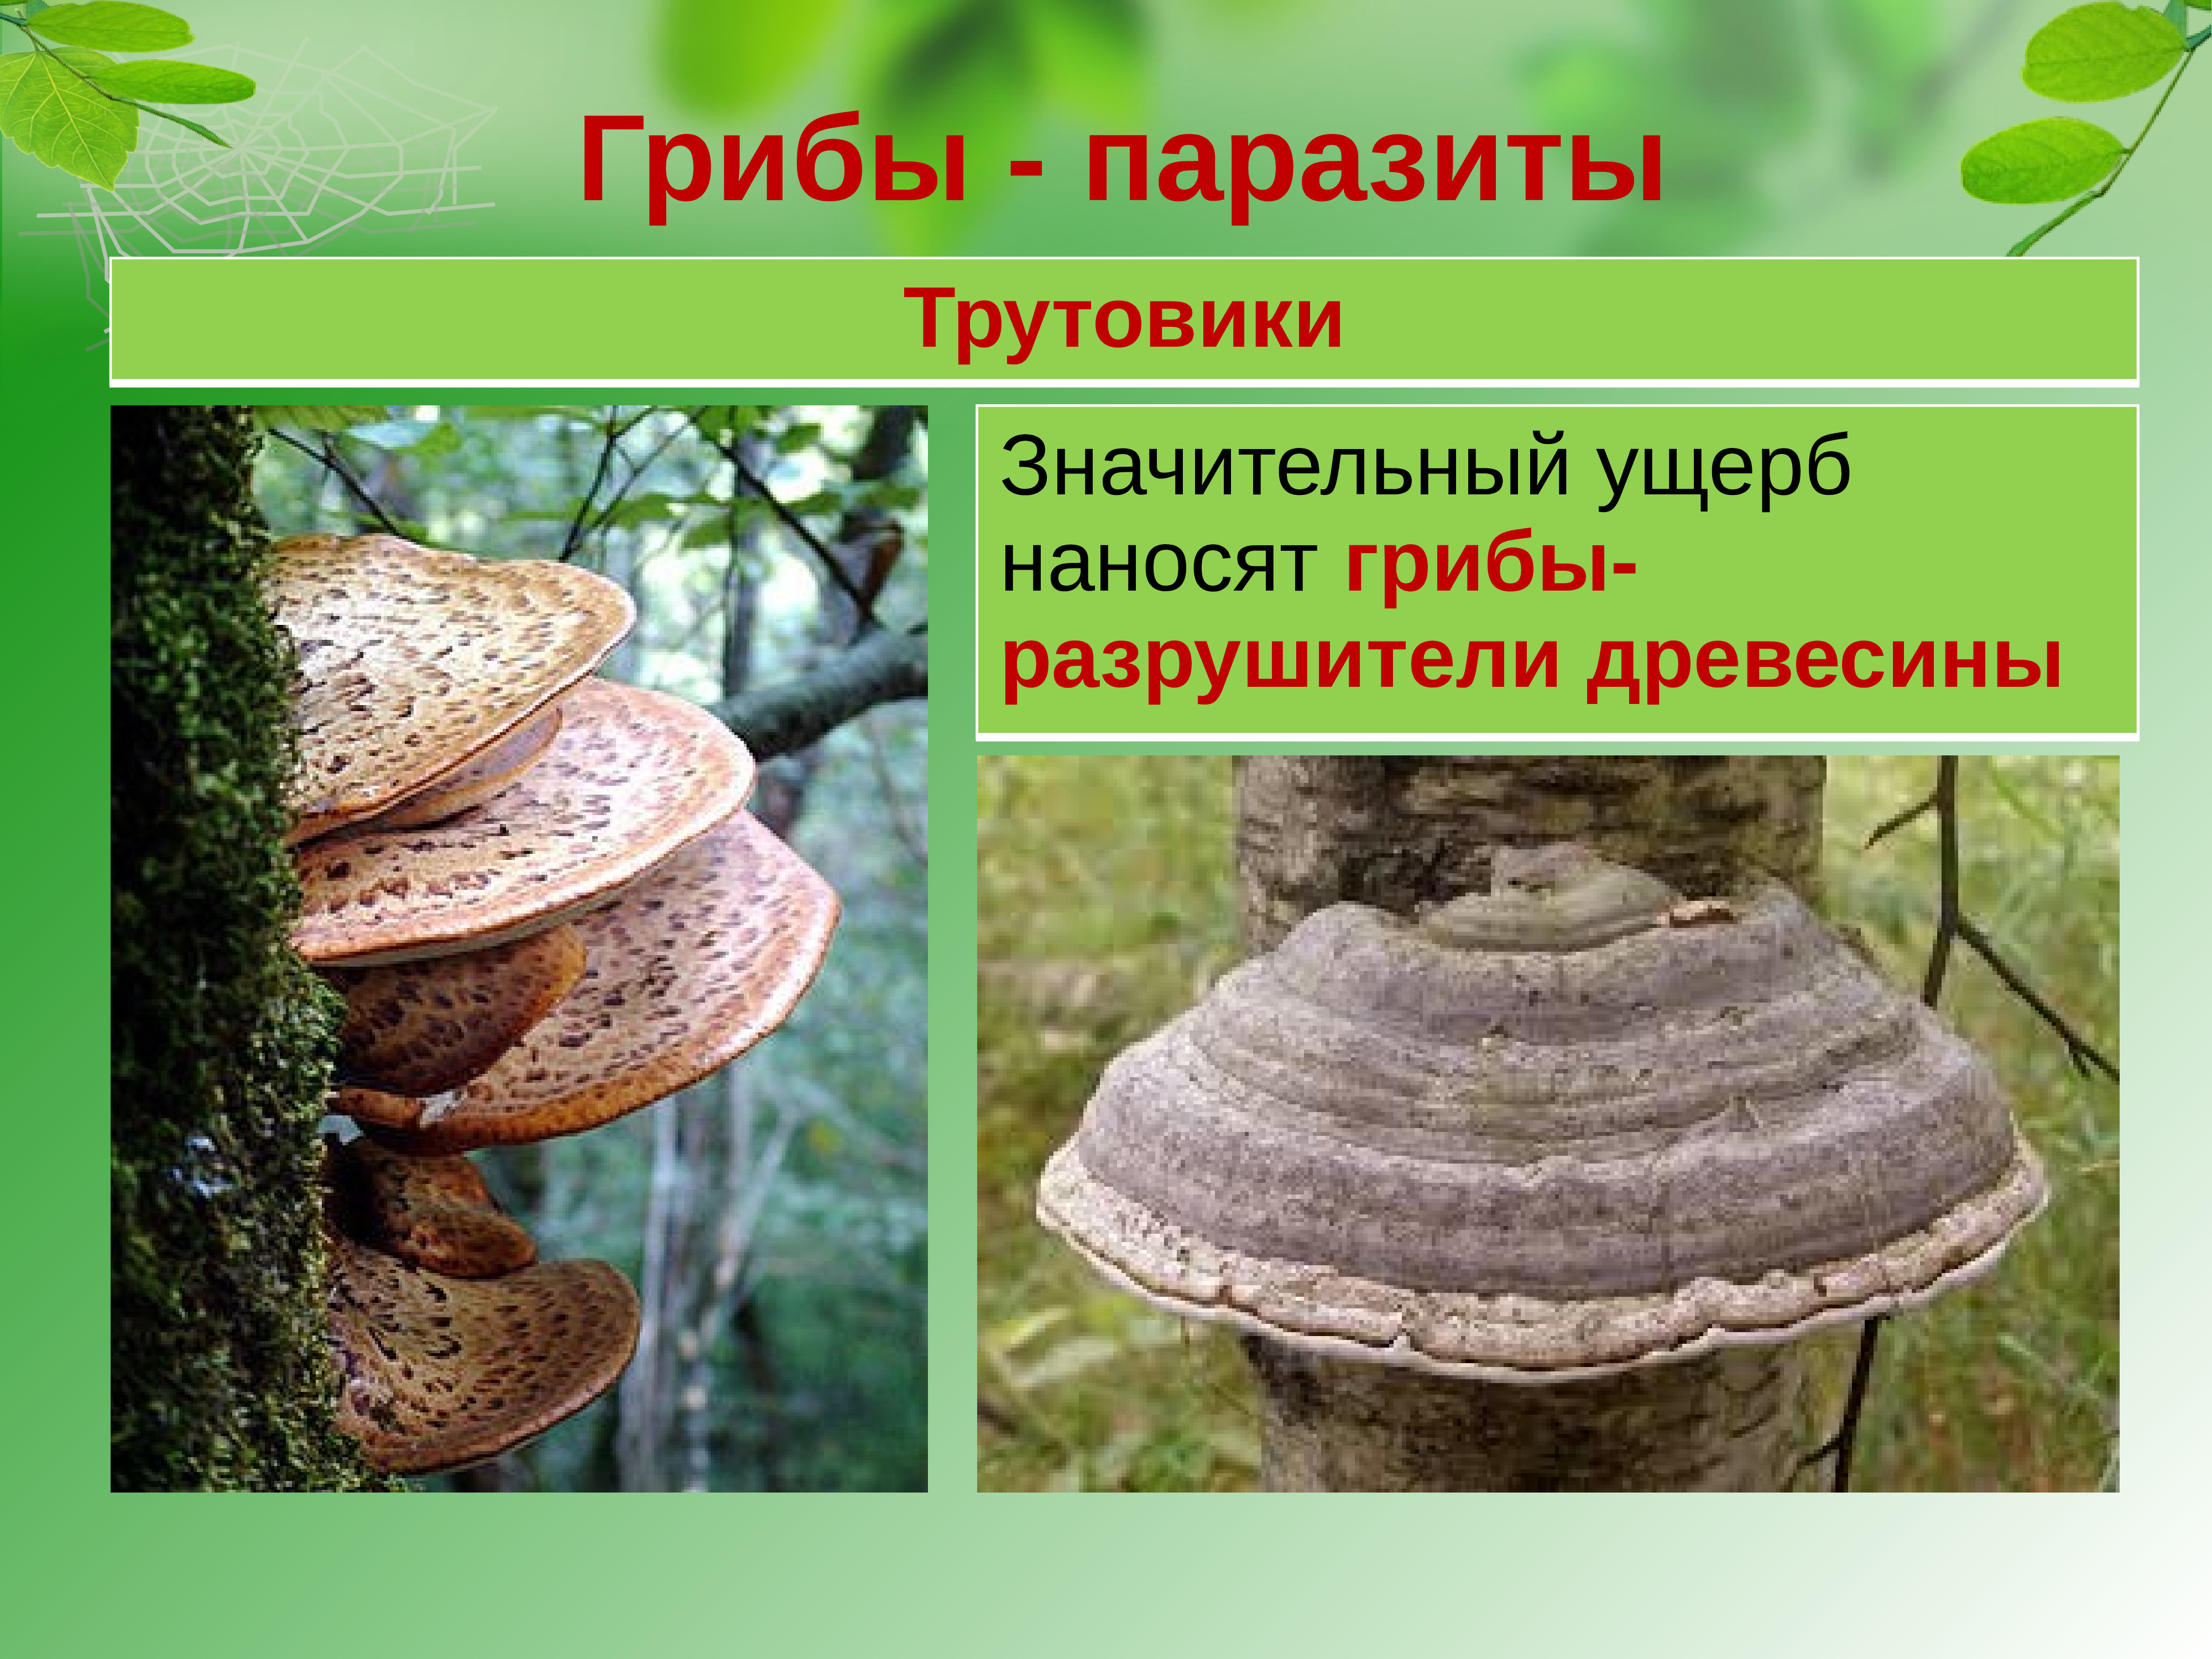 Трутовики грибы Разрушители древесины